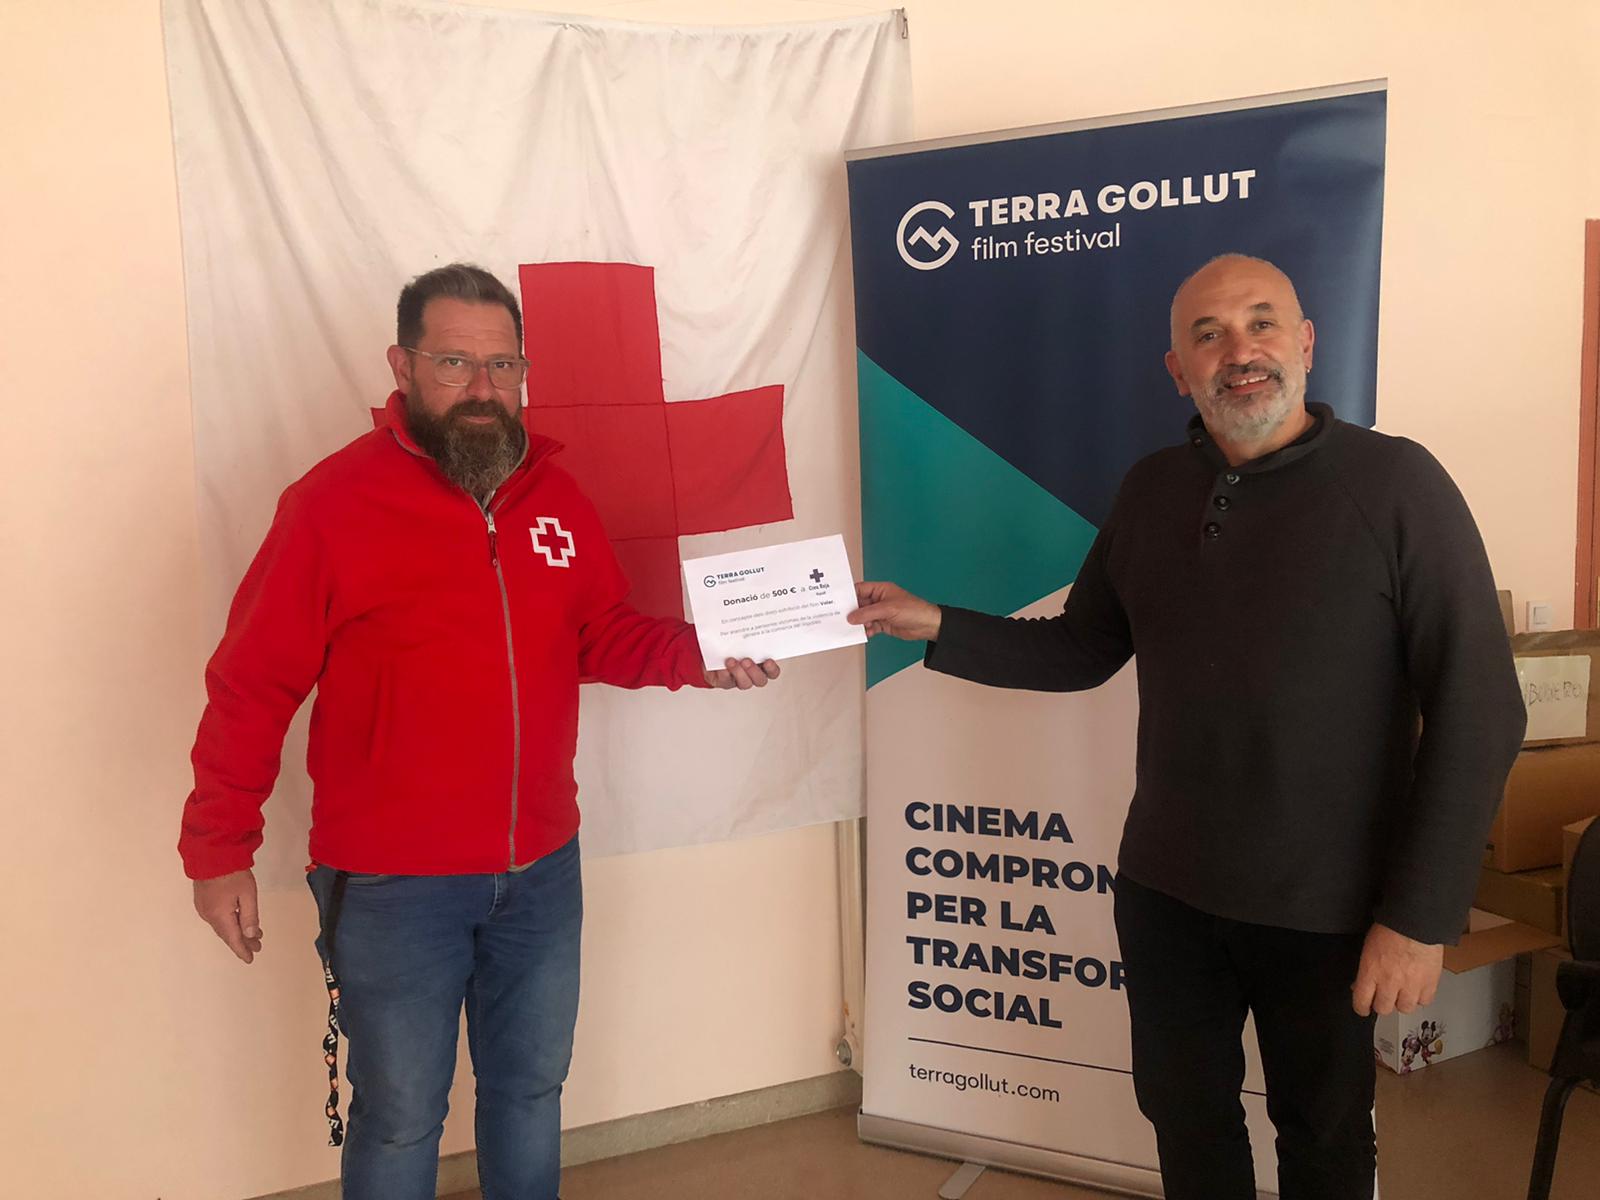 El TERRA GOLLUT film festival fa entrega a la Creu Roja de Ripoll una donació econòmica per a projectes de treball amb dones víctimes de violència de gènere al Ripollès.